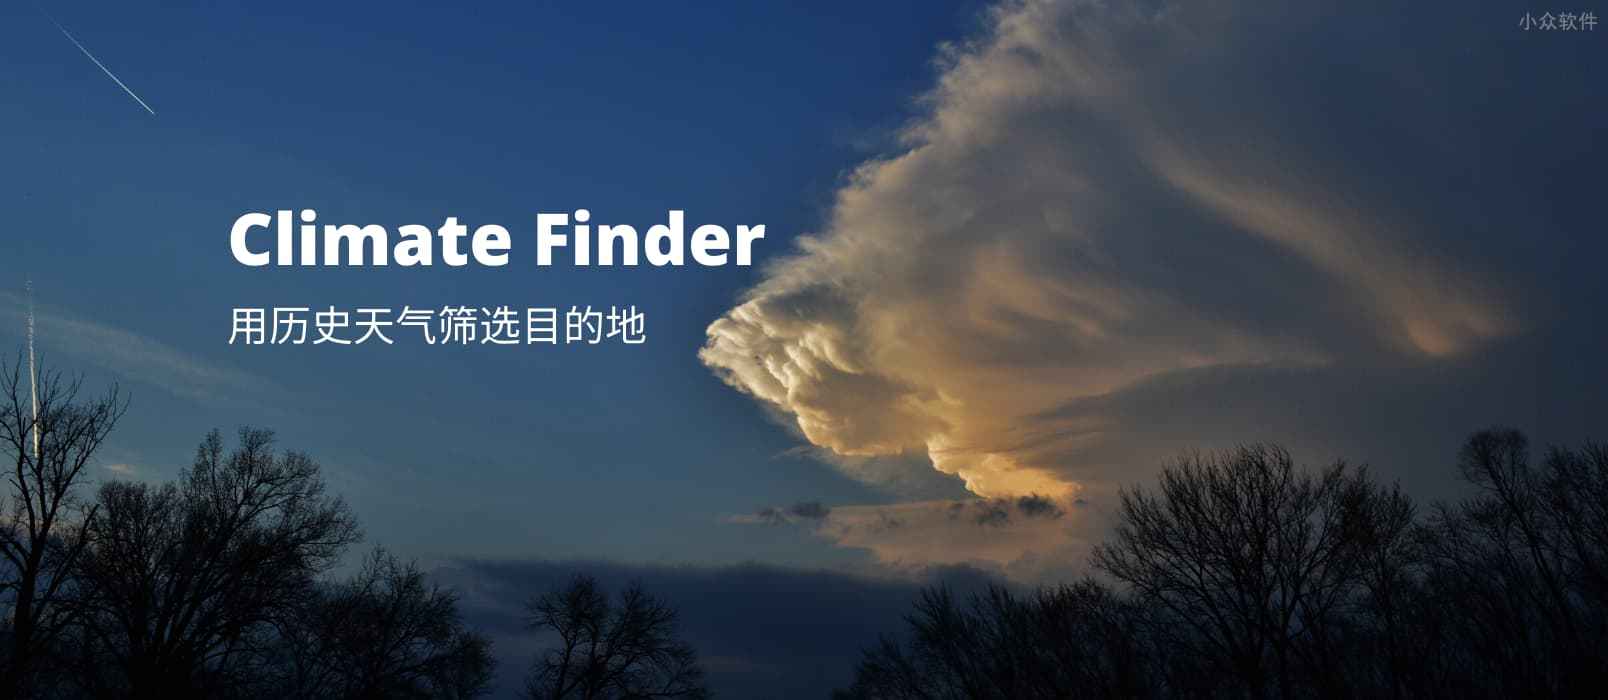 Climate Finder – 用历史天气数据筛选旅游目的地